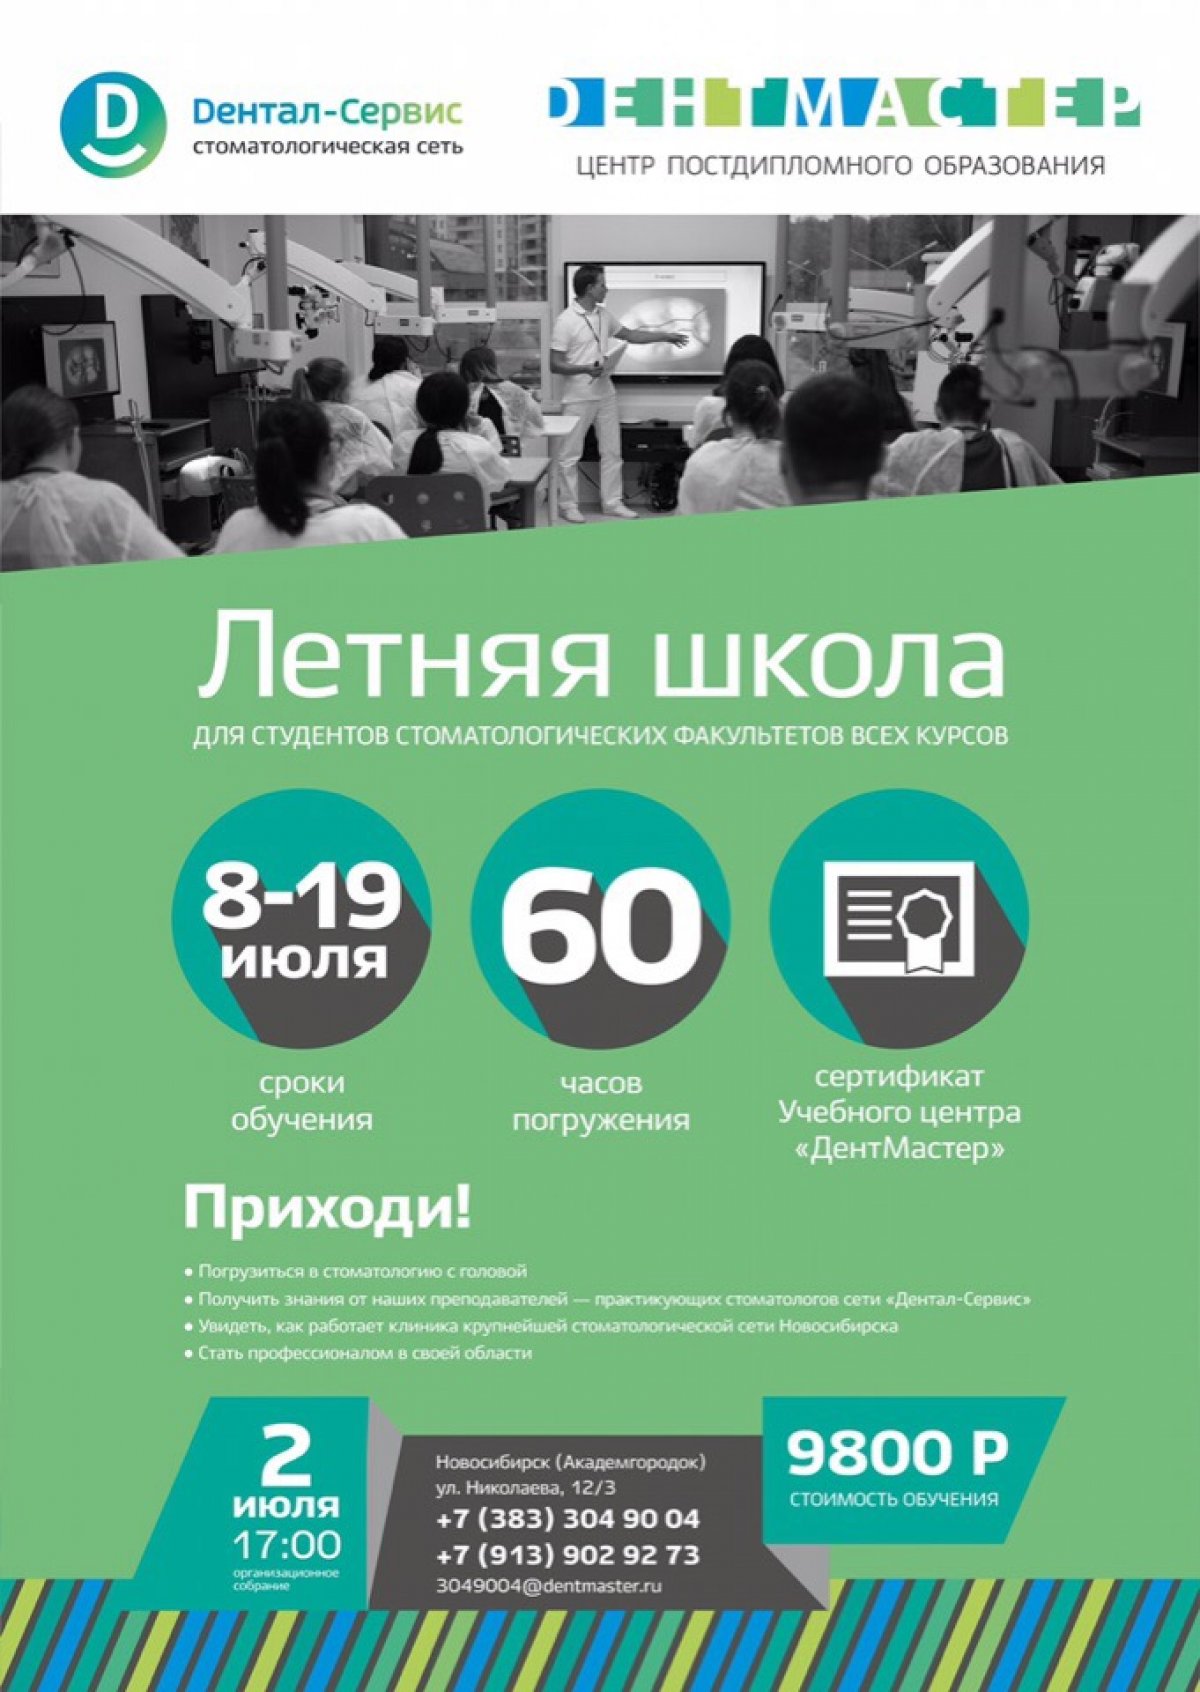 Совсем нет времени прокачать свои навыки во время учебного года? Хочешь погрузиться в стоматологию с головой и увидеть, как работает крупнейшая стоматологическая сеть Новосибирска?